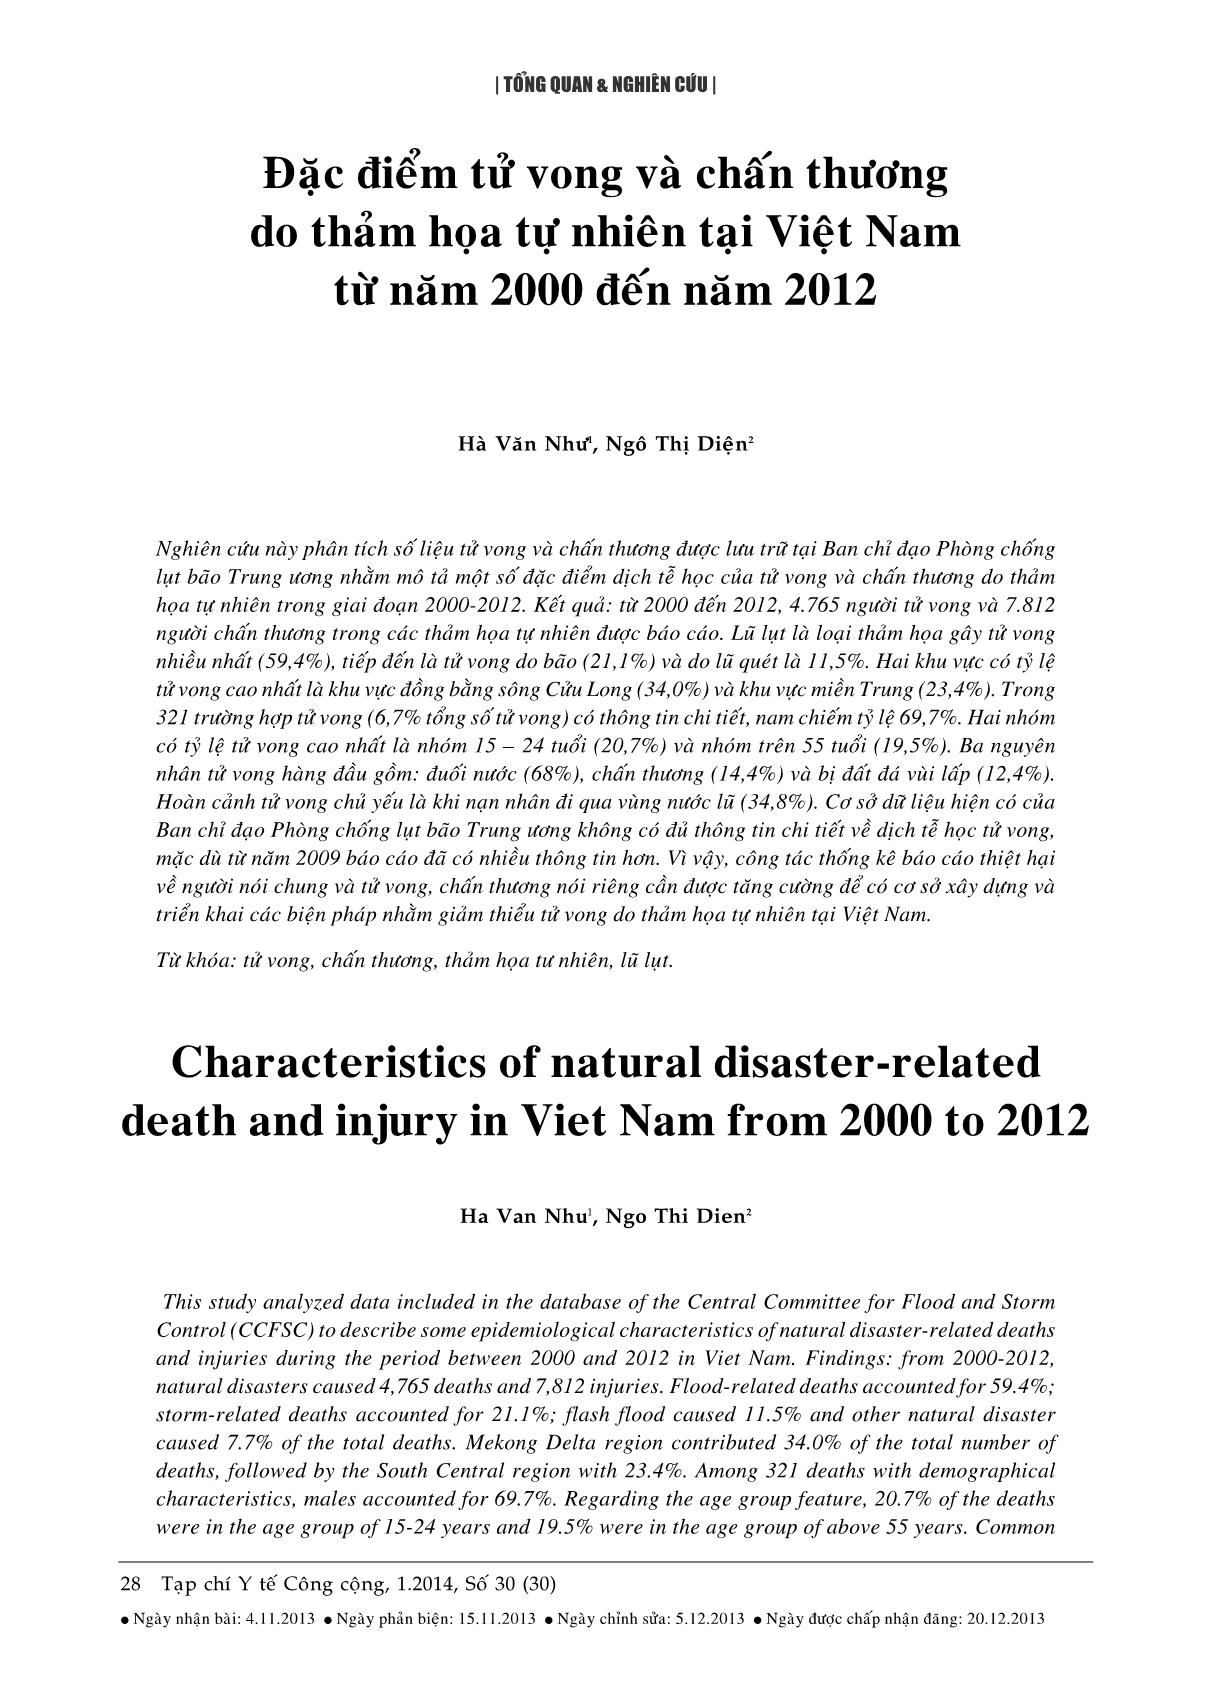 Đặc điểm tử vong và chấn thương do thảm họa tự nhiên tại Việt Nam từ năm 2000 đến năm 2012 trang 1